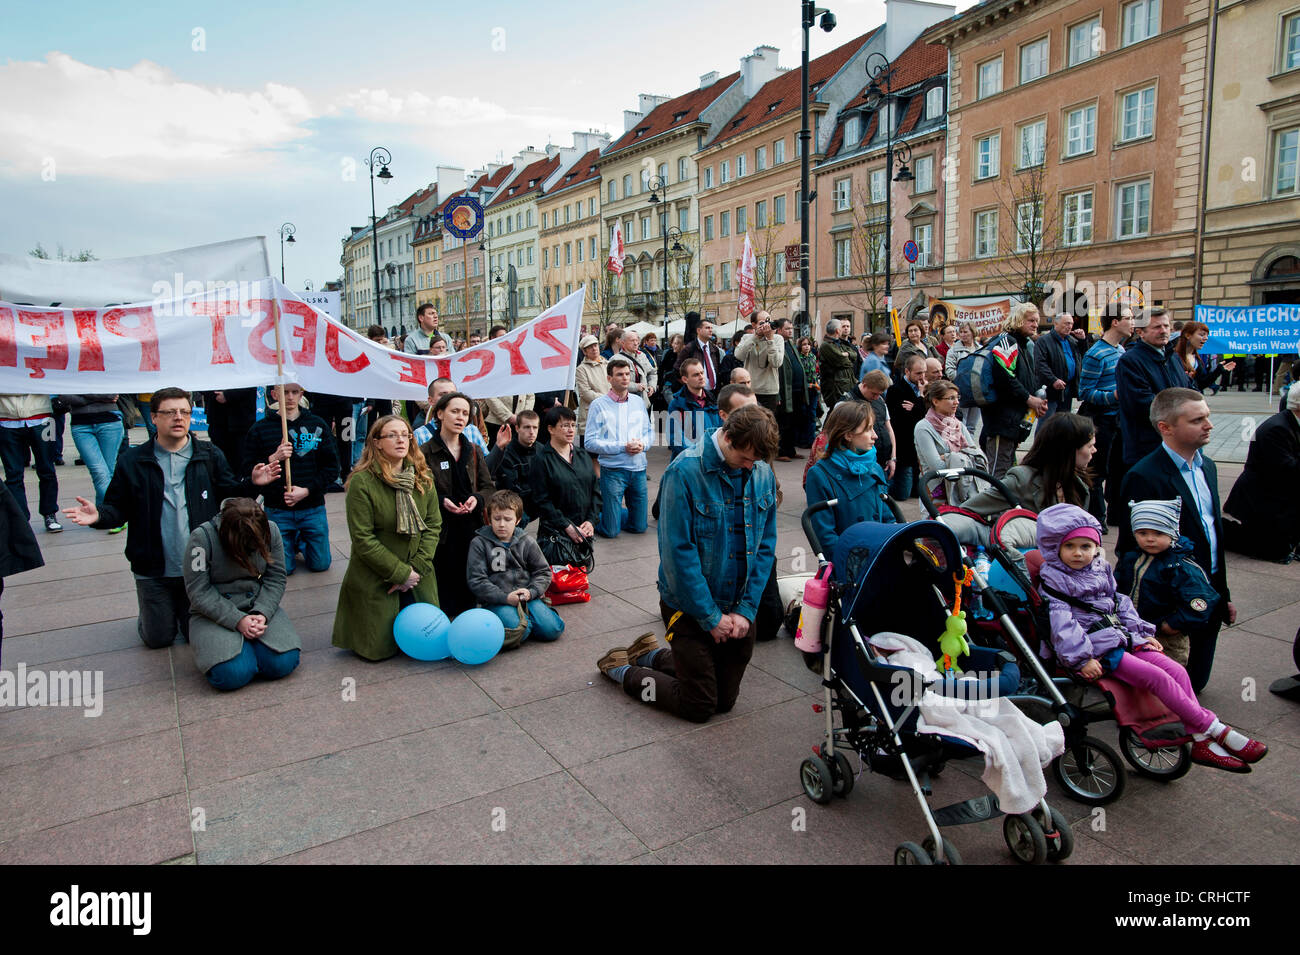 Religiöse Veranstaltung auf der Straße, Warschau, Polen Stockfoto